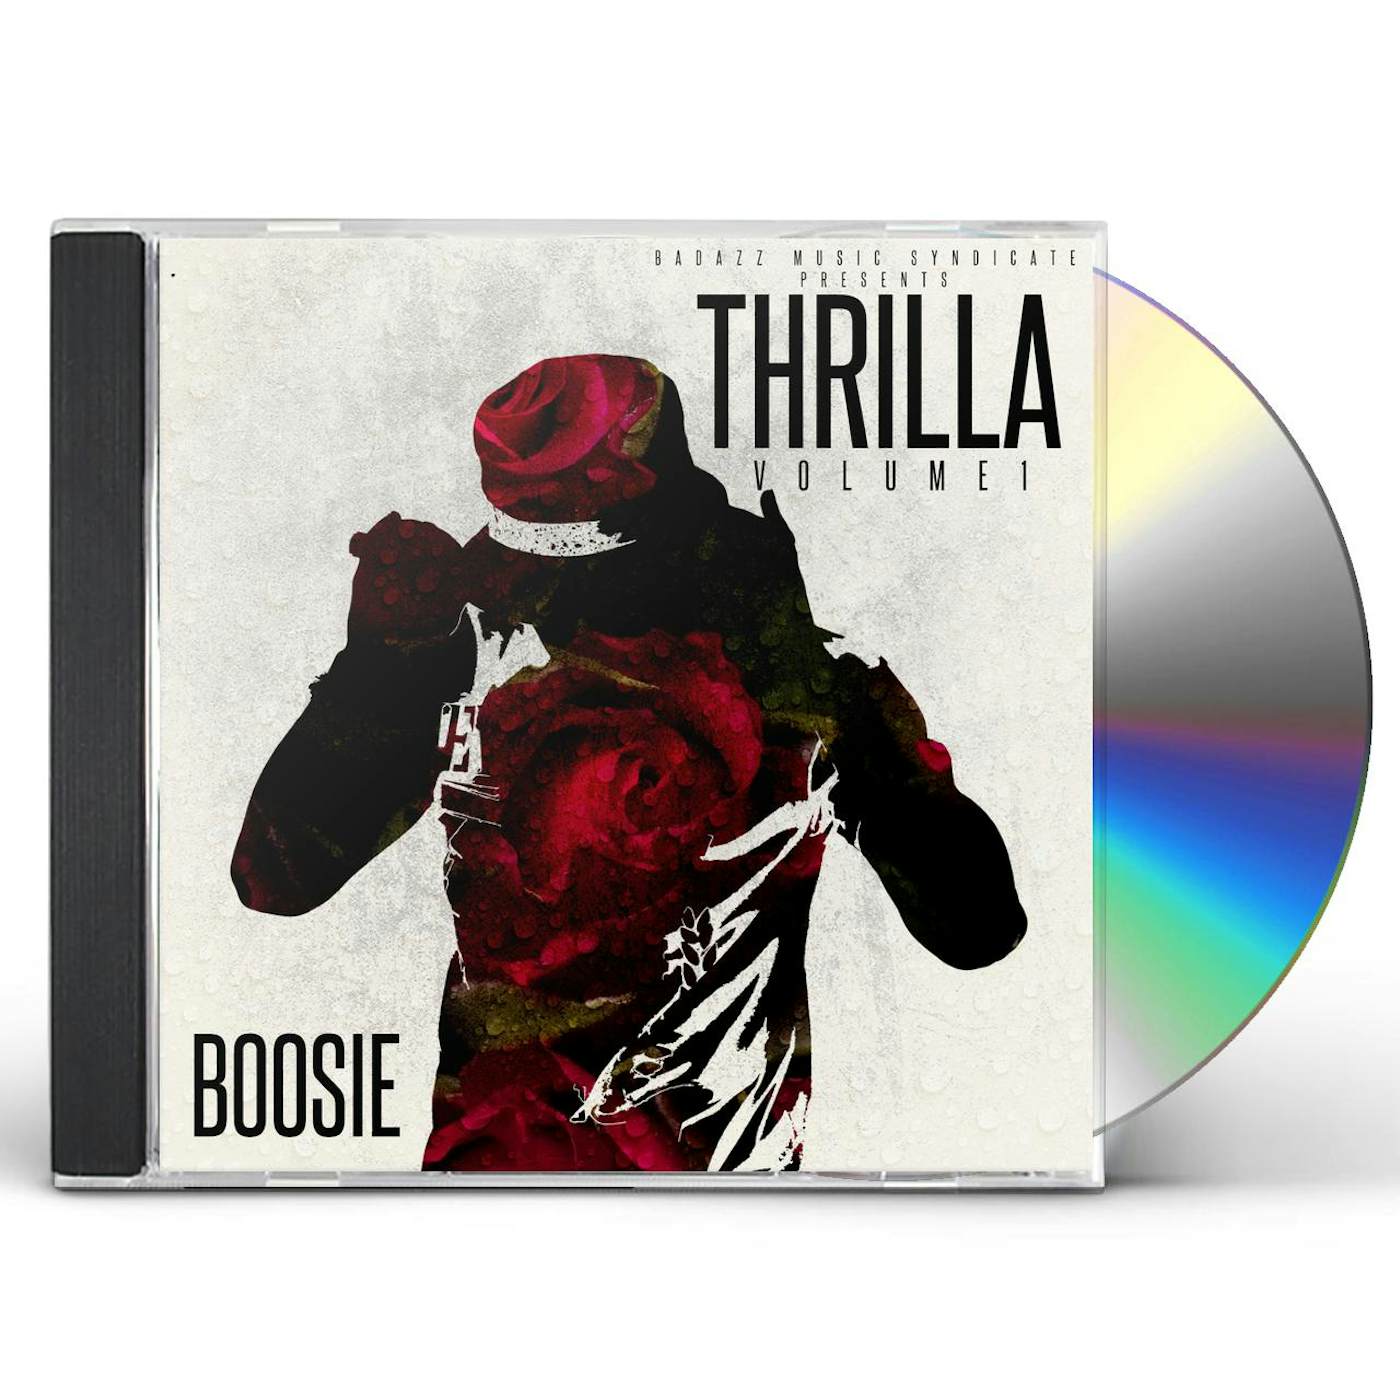 Boosie Badazz THRILLA VOL. 1 CD